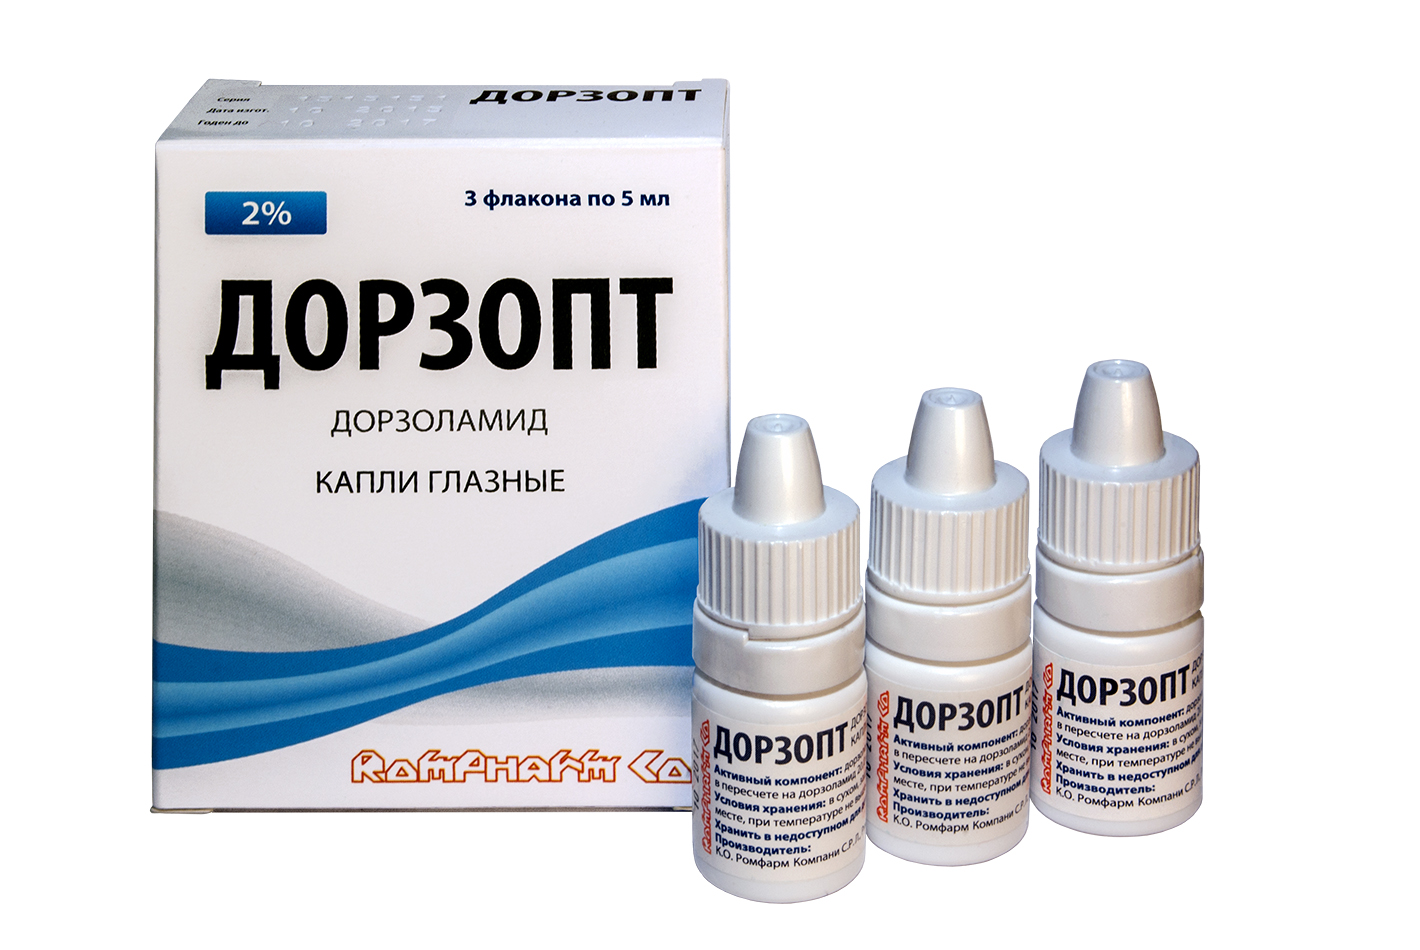 Дорзопт гл. капли 2% 5мл фл. N3 {Rompharm-Румыния} цены в аптеках .